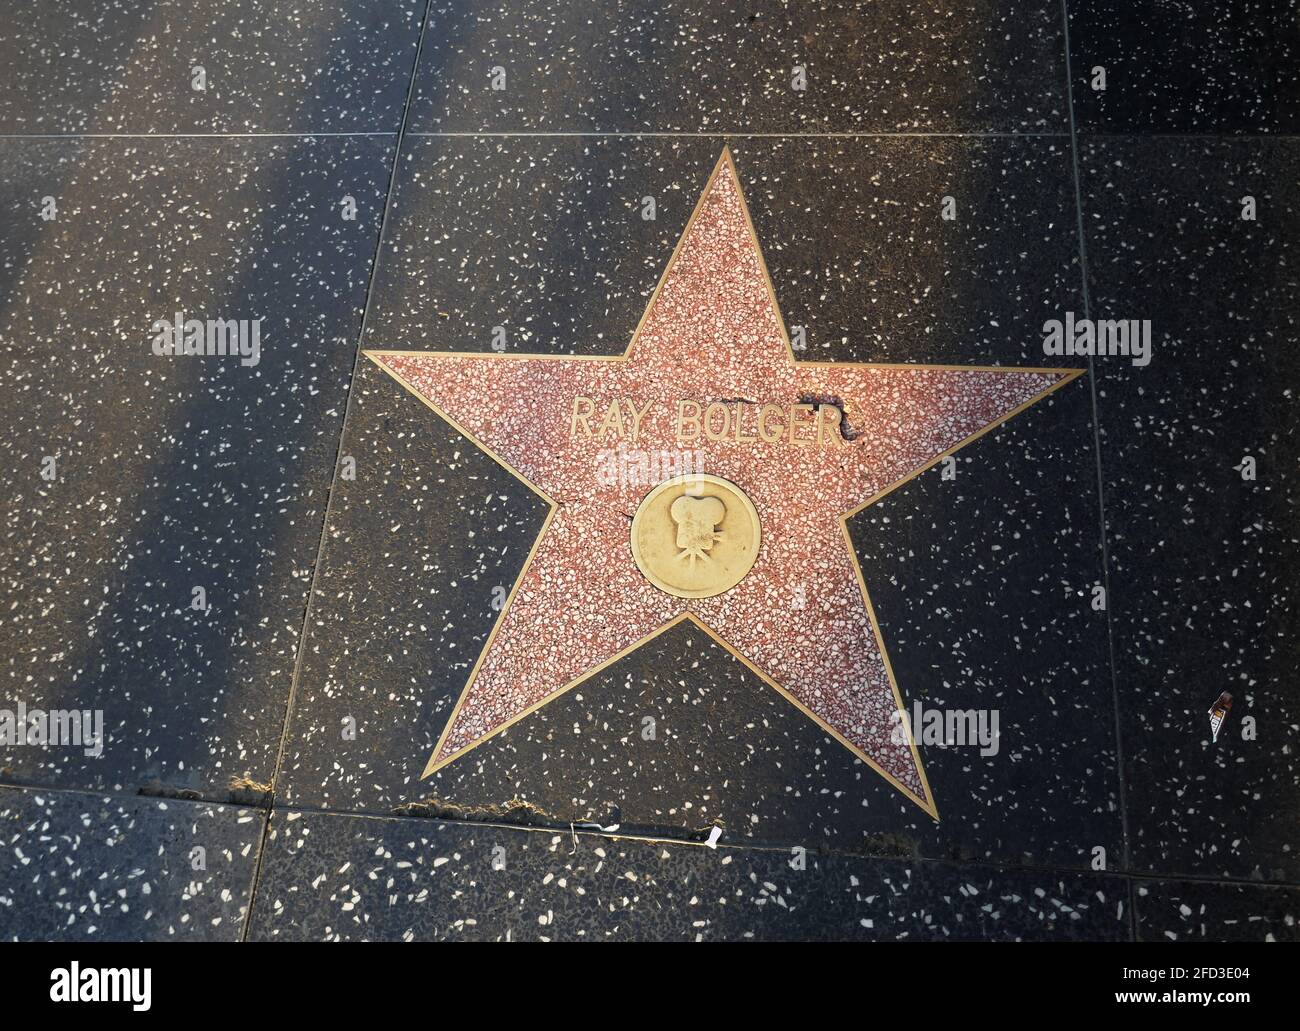 Hollywood, California, USA 17 aprile 2021 una visione generale dell'atmosfera dell'attore Ray Bolger's Star sulla Hollywood Walk of Fame il 17 aprile 2021 a Hollywood, California, USA. Foto di Barry King/Alamy Stock foto Foto Stock